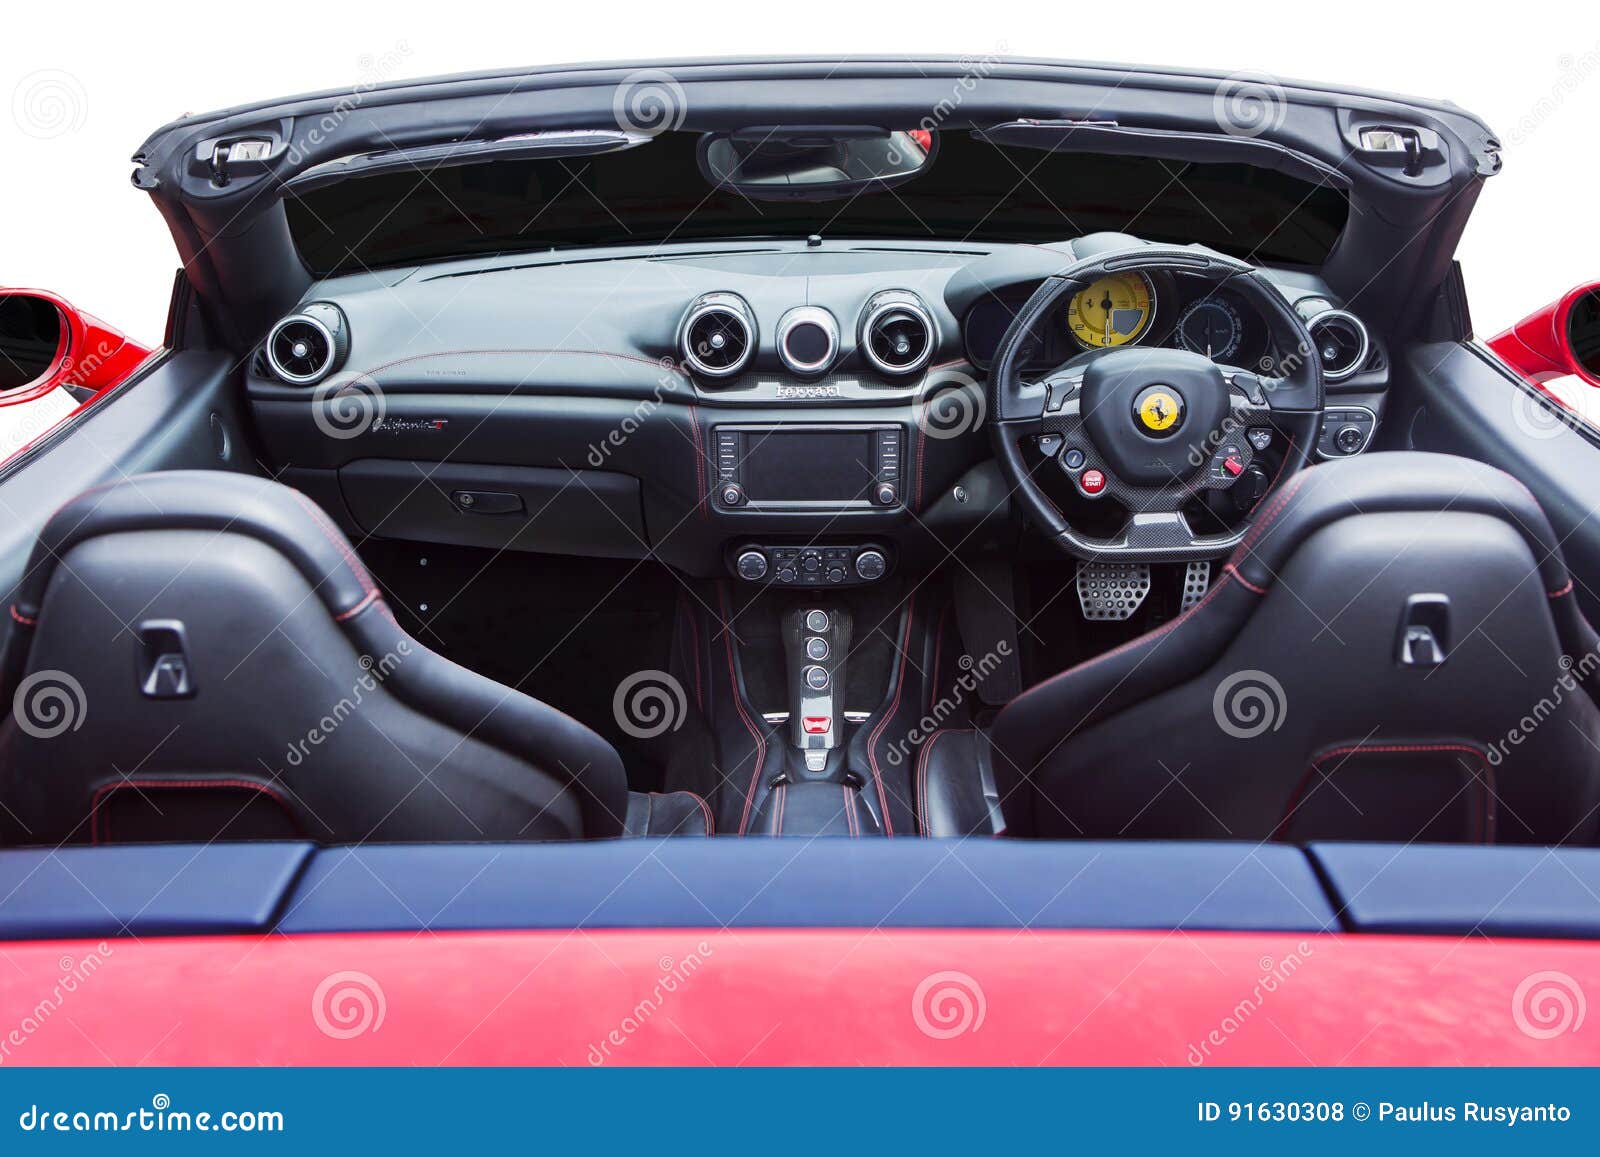 Luxury Interior Of Ferrari Car Editorial Stock Photo Image